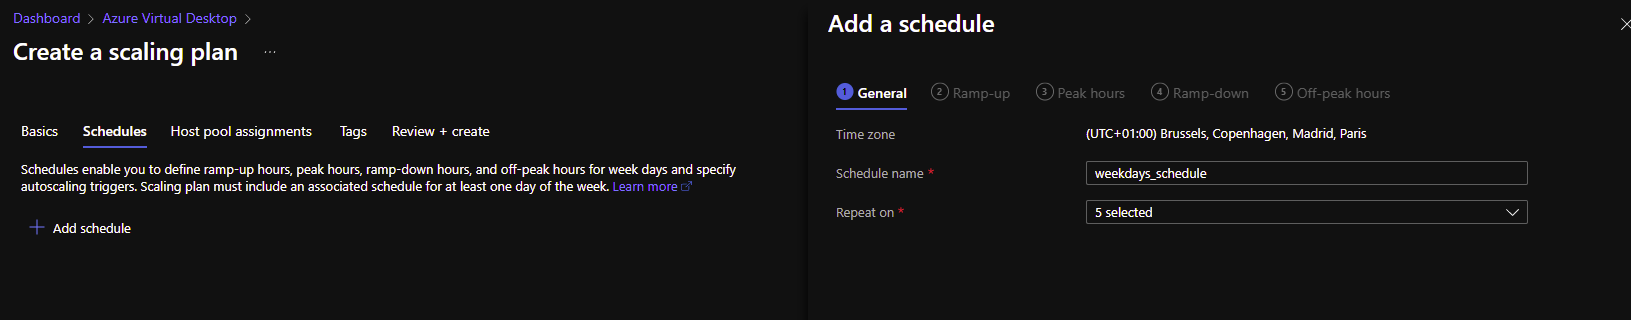 Add a schedule